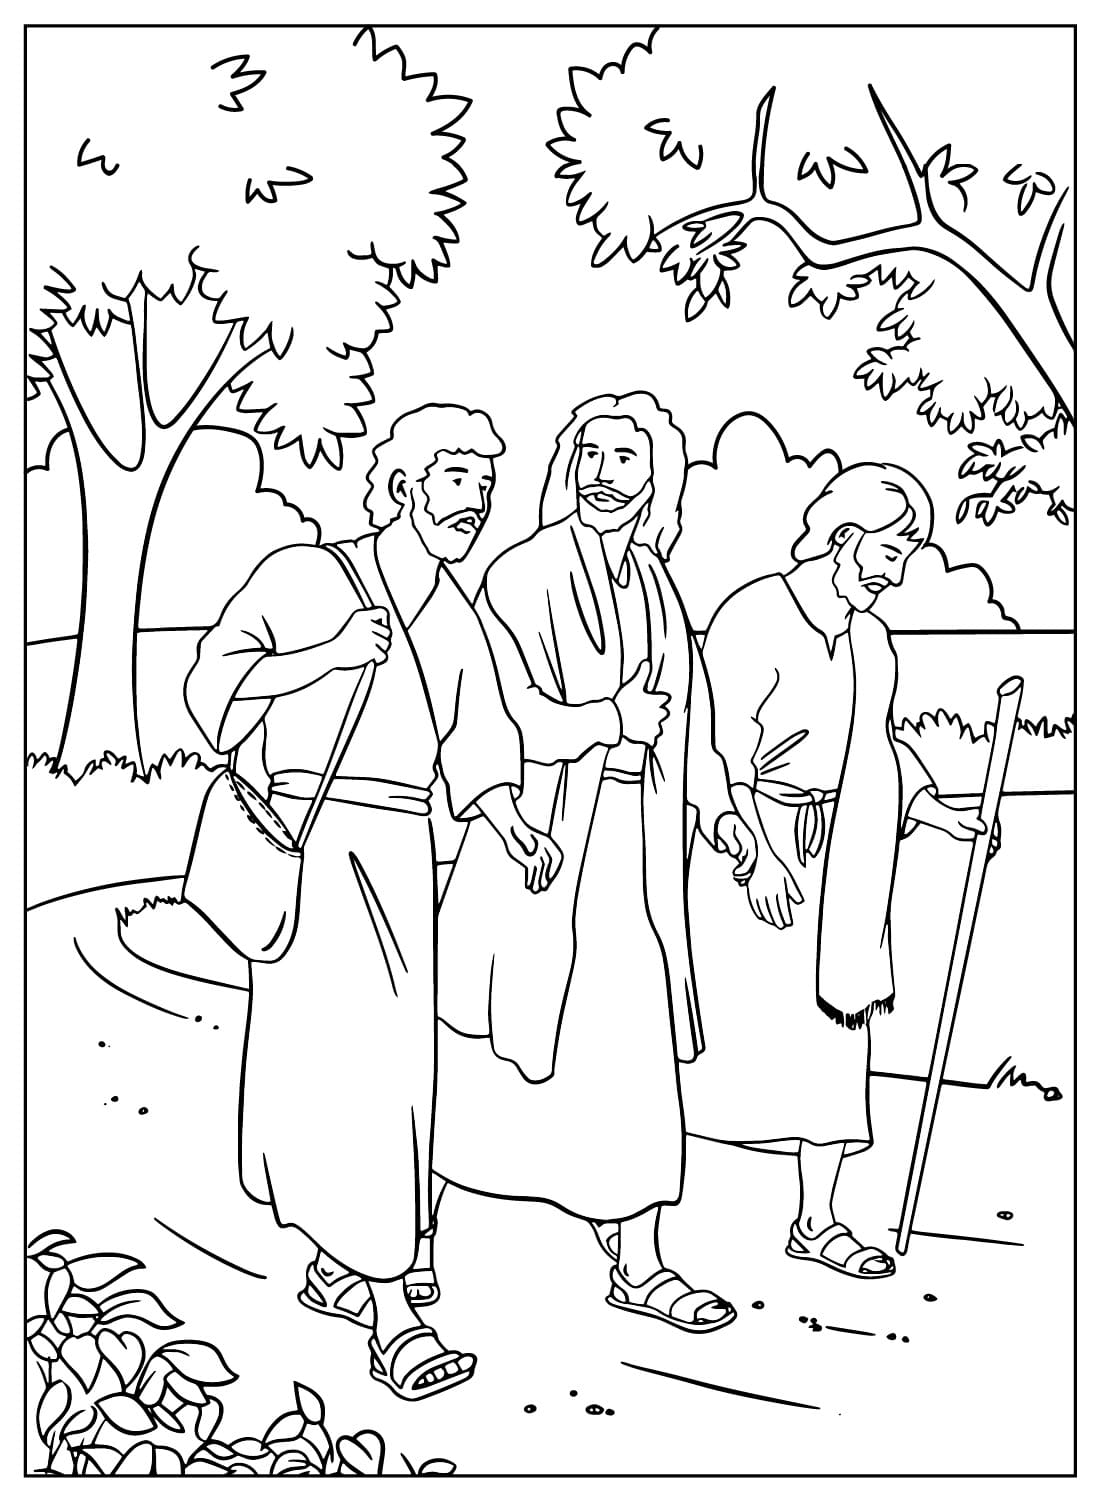 Иисус с двумя учениками по дороге в Эммаус от Иисуса